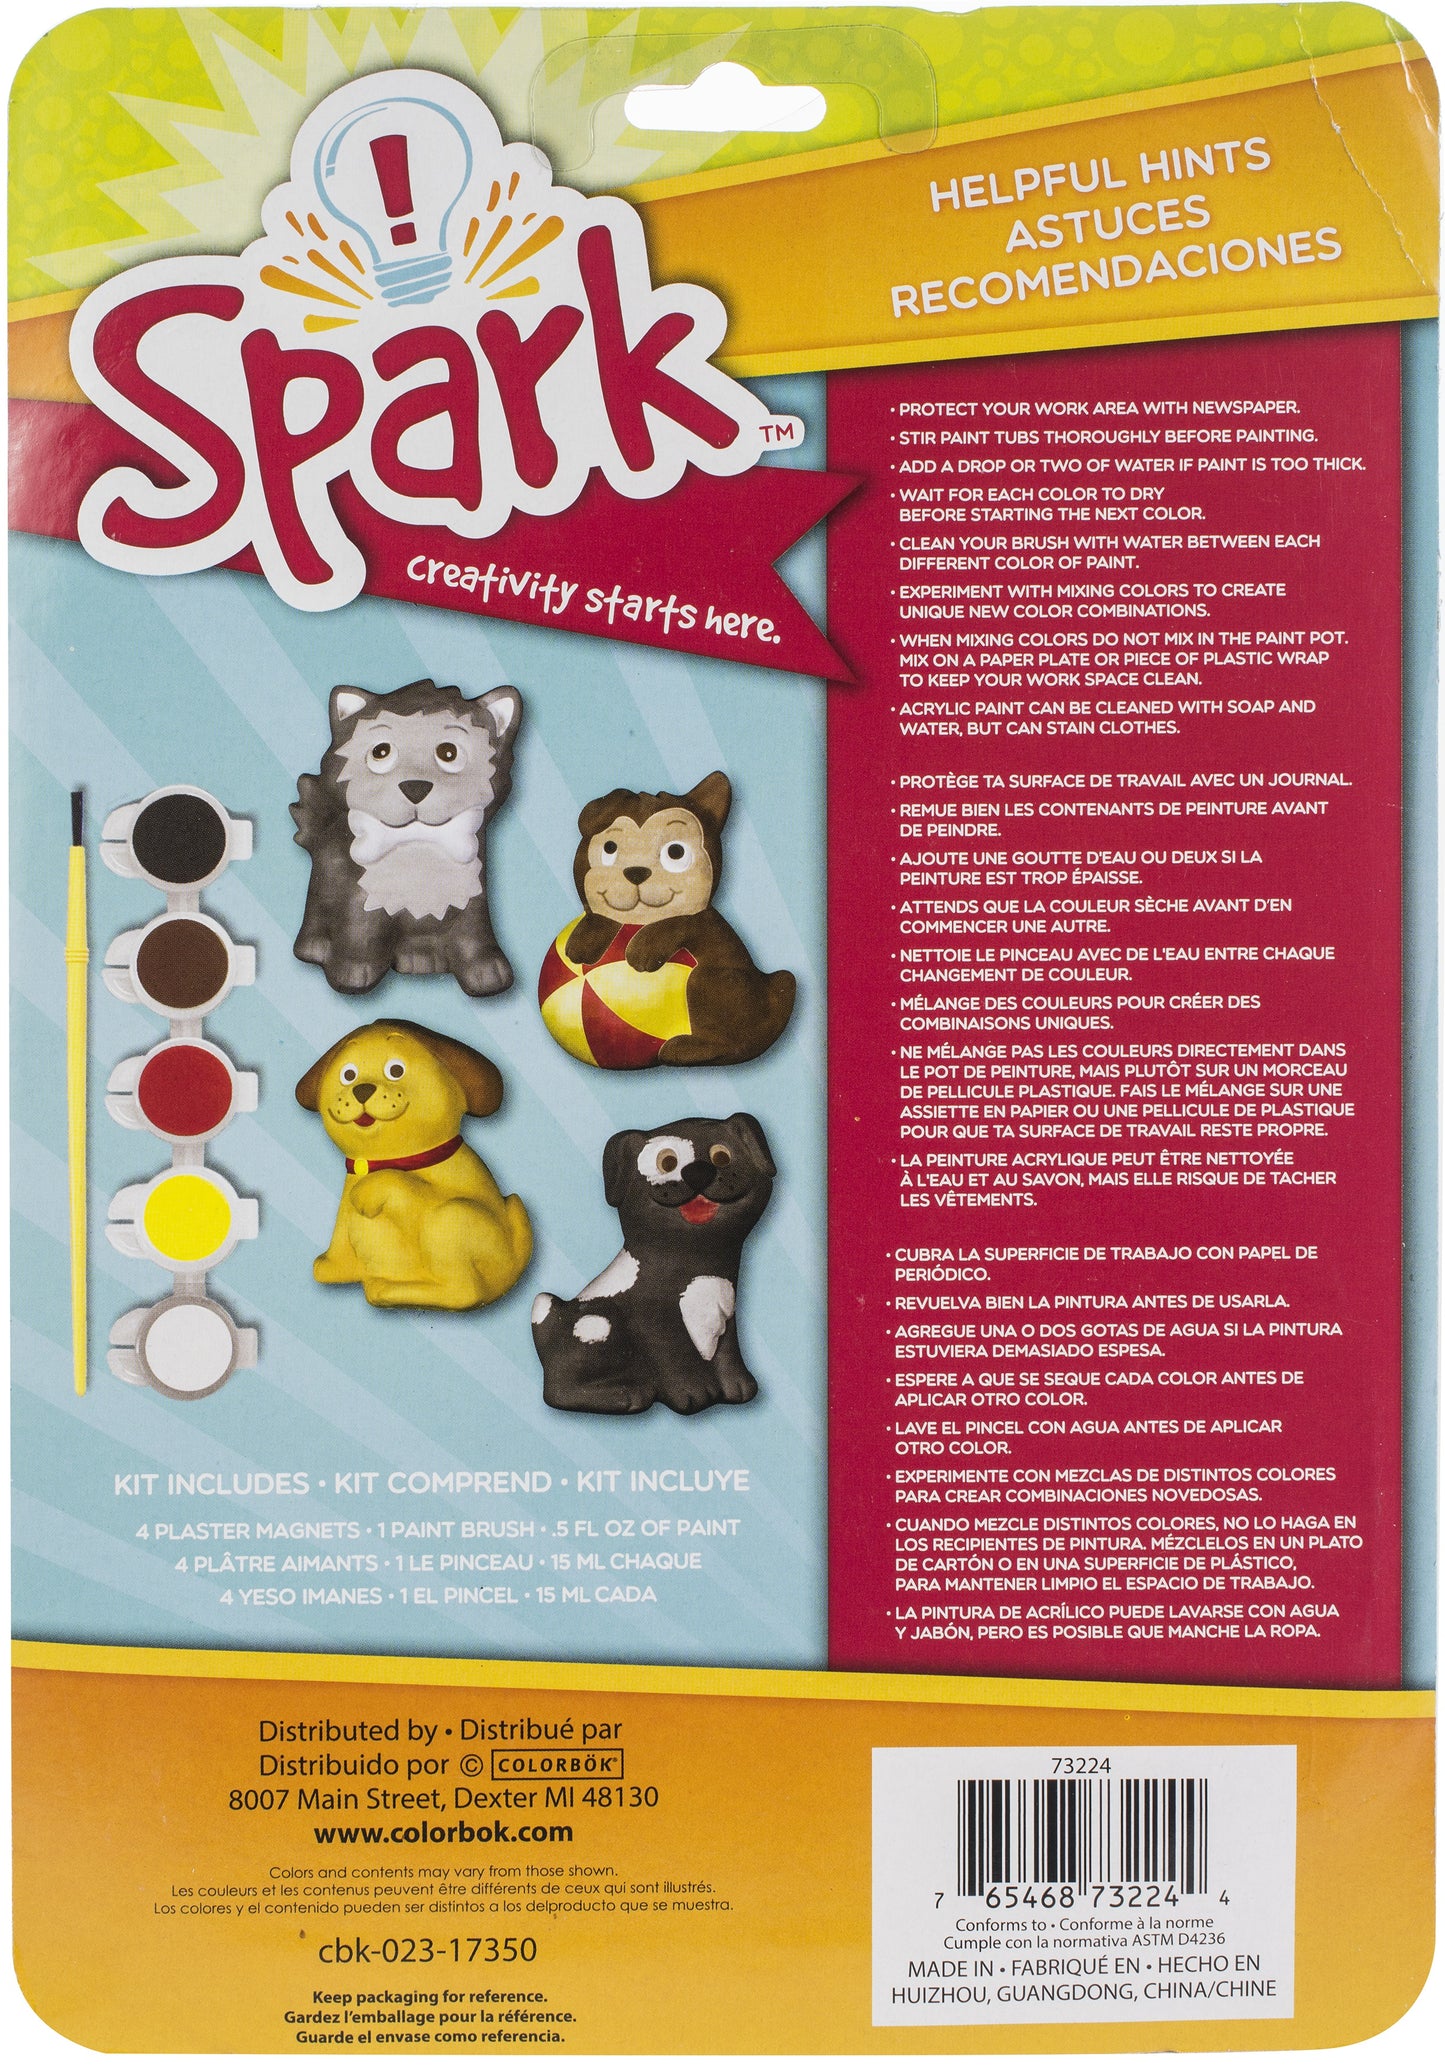 Spark Plaster Magnet Kit-Playful Pups